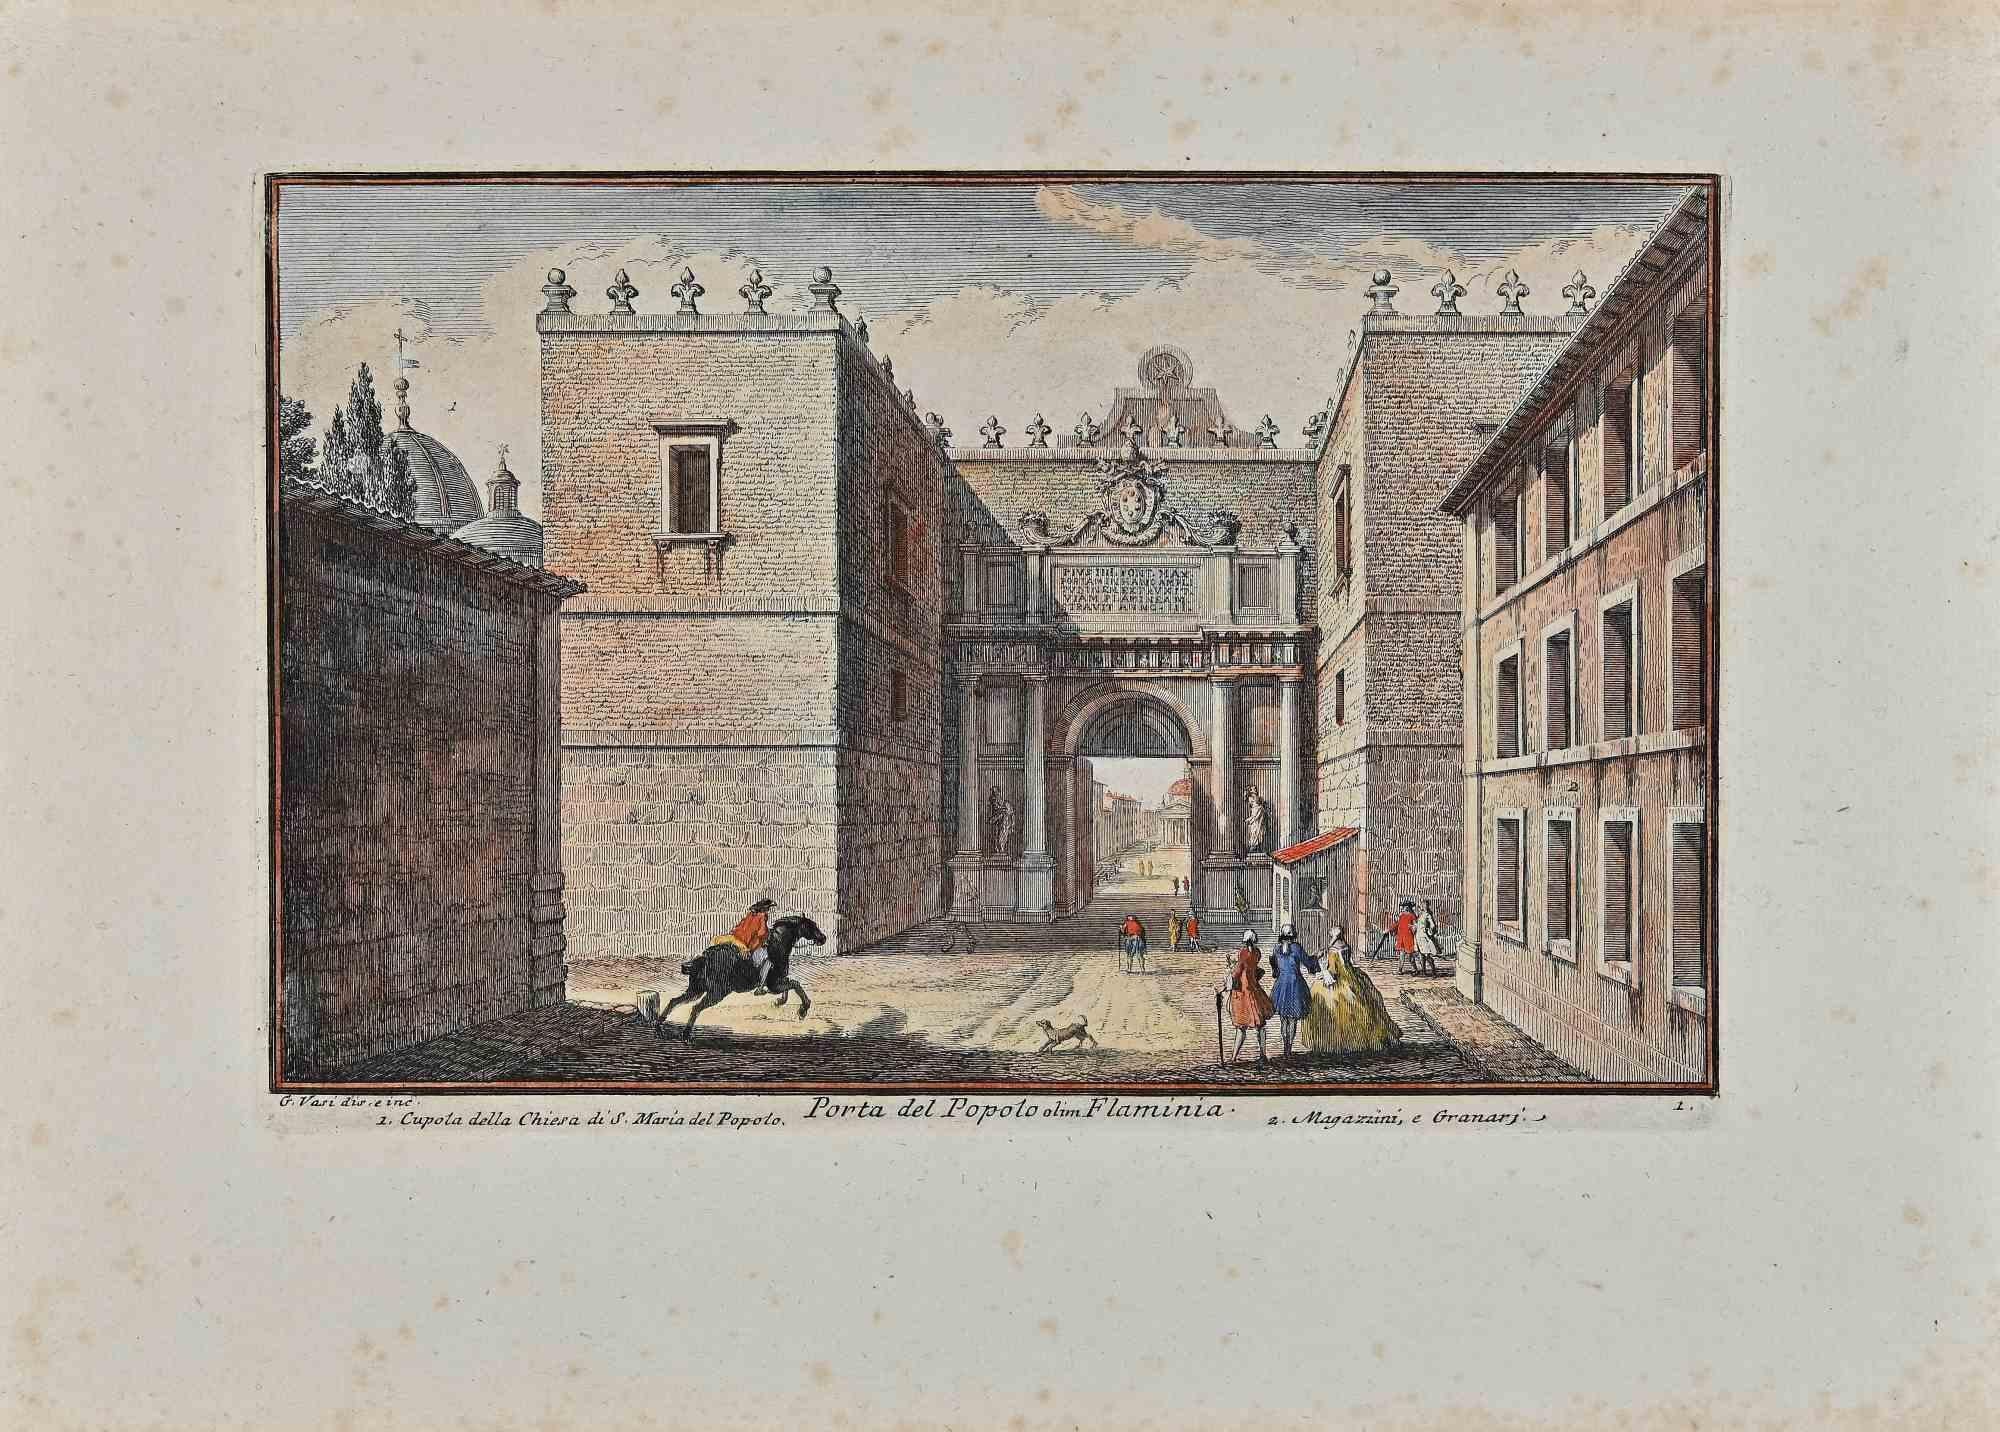 Porta del Popolo ist eine Originalradierung aus dem späten 18. Jahrhundert von Giuseppe Vasi.

Signiert und betitelt am unteren Rand der Platte. 

Guter Zustand und gealterte Ränder mit einigen Stockflecken.

Giuseppe Vasi  (Corleone, 1710 - Rom,